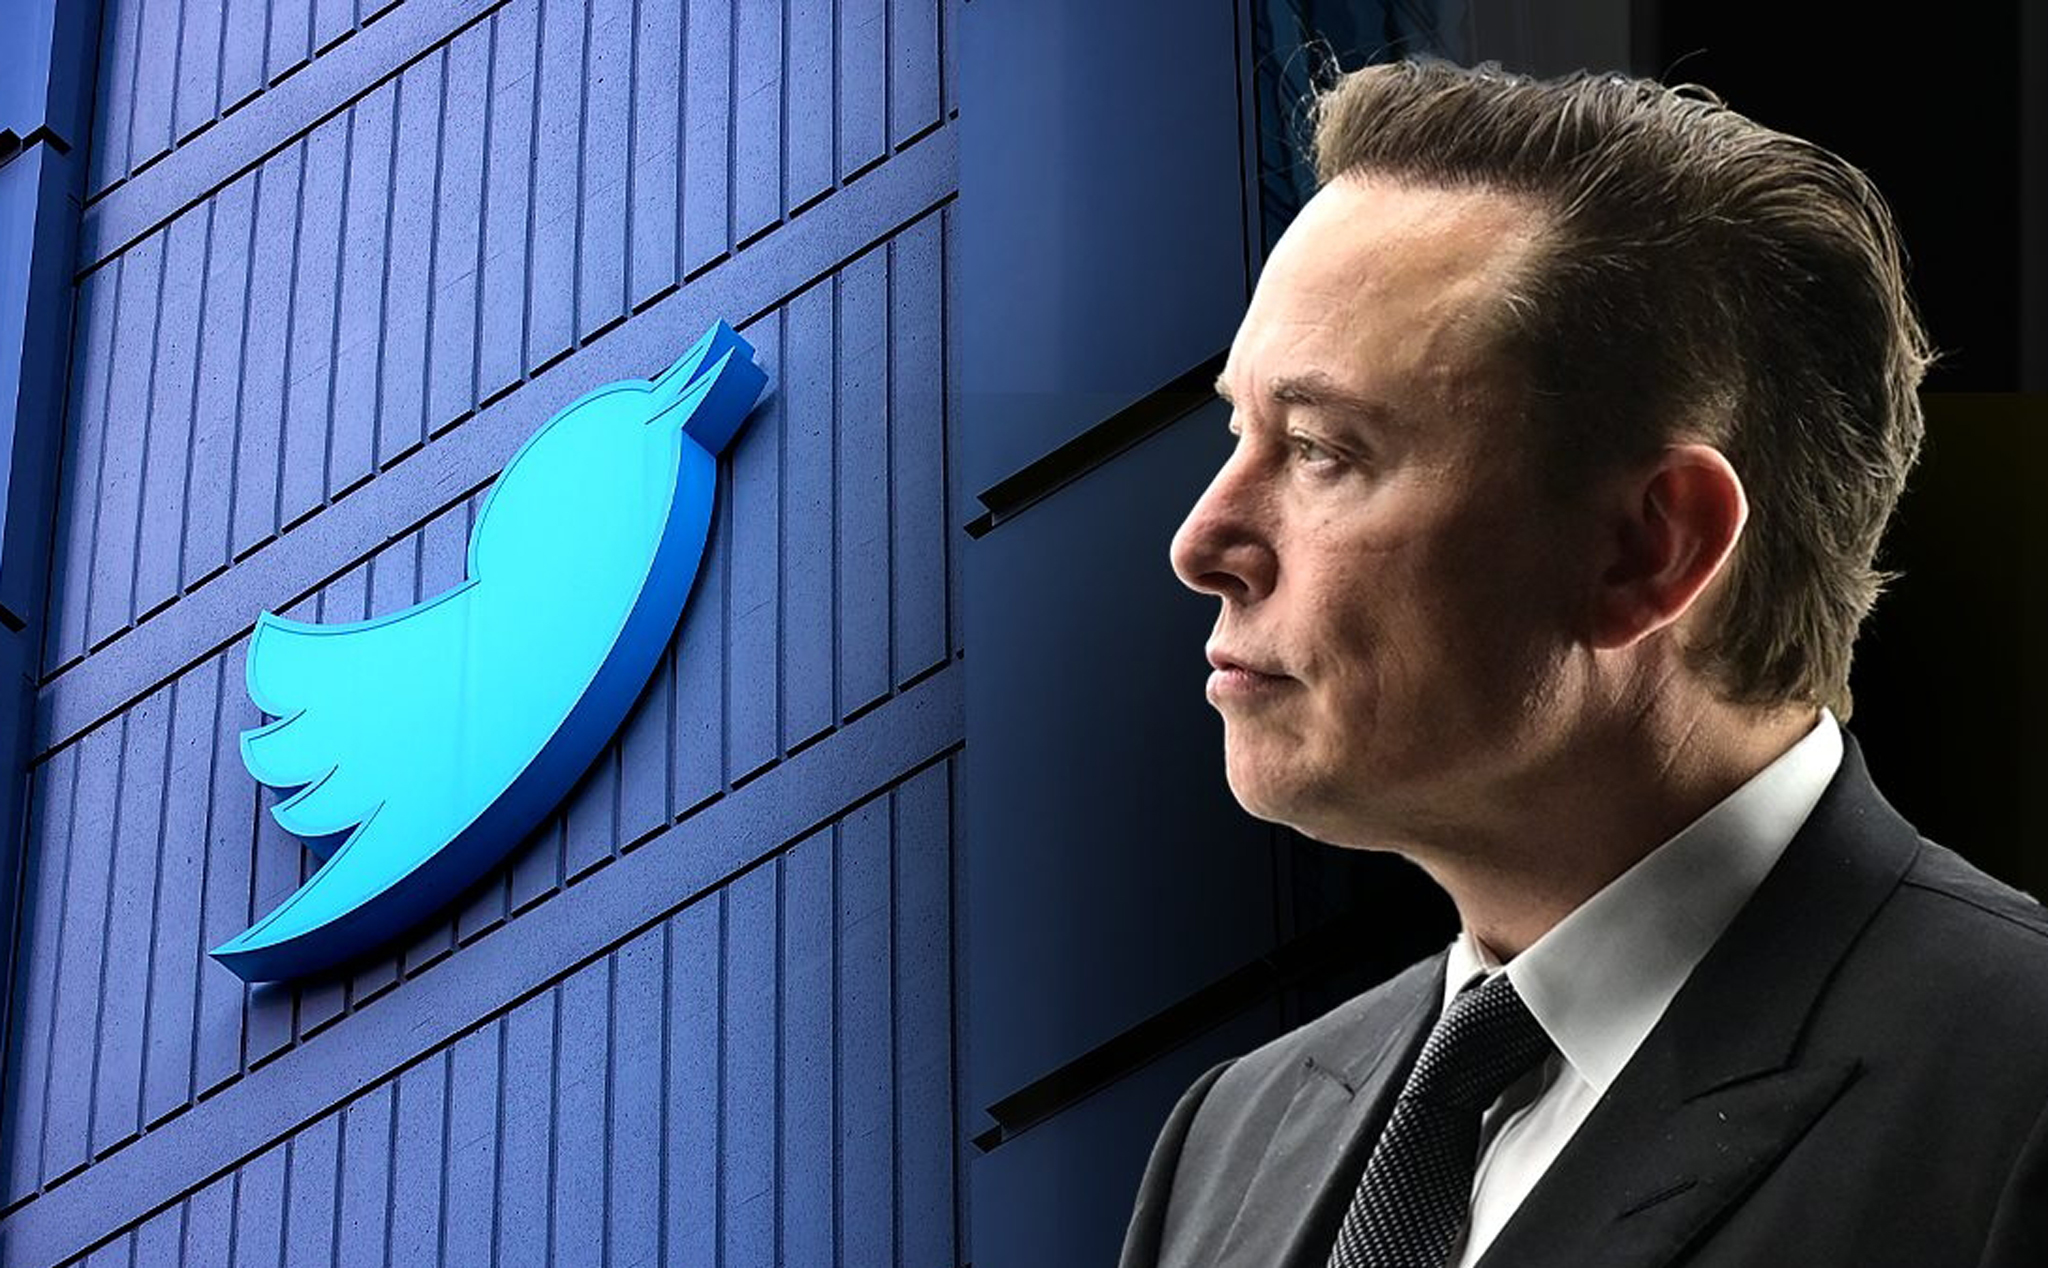 Cổ đông Twitter lên án Elon Musk thao túng cổ phiếu công ty, yêu cầu ông giữ đúng thoả thuận ban đầu